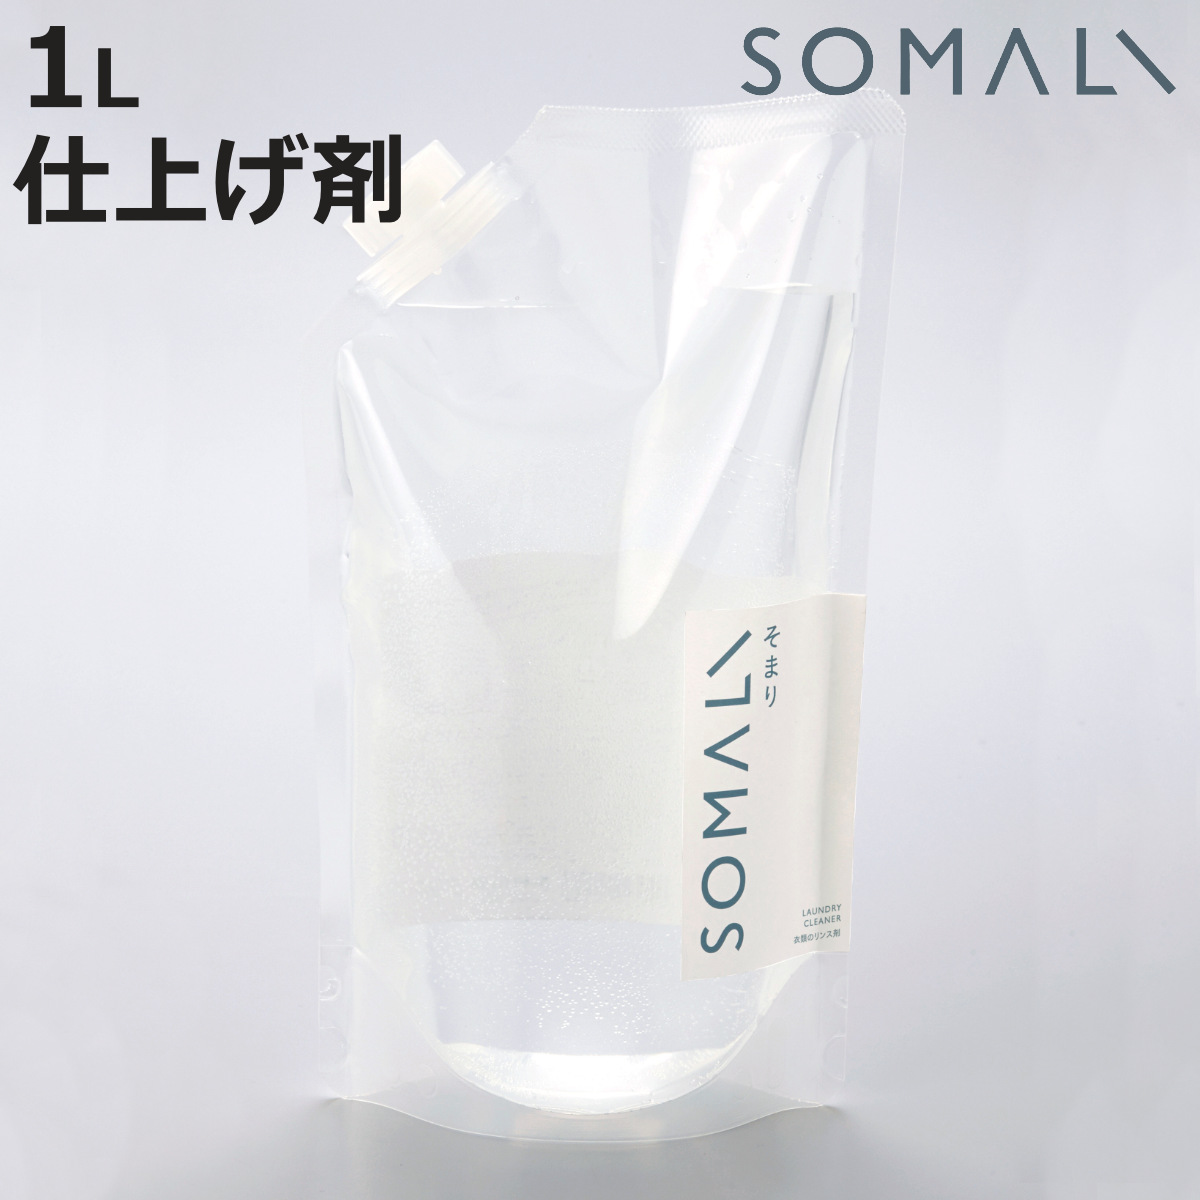 そまり SOMALI 洗剤 衣類のリンス剤 詰替用 １L （ 洗濯用洗剤 洗濯用品 せっけん 石けん 石鹸 天然 日本製 オーガニック 自然 エコ 植物